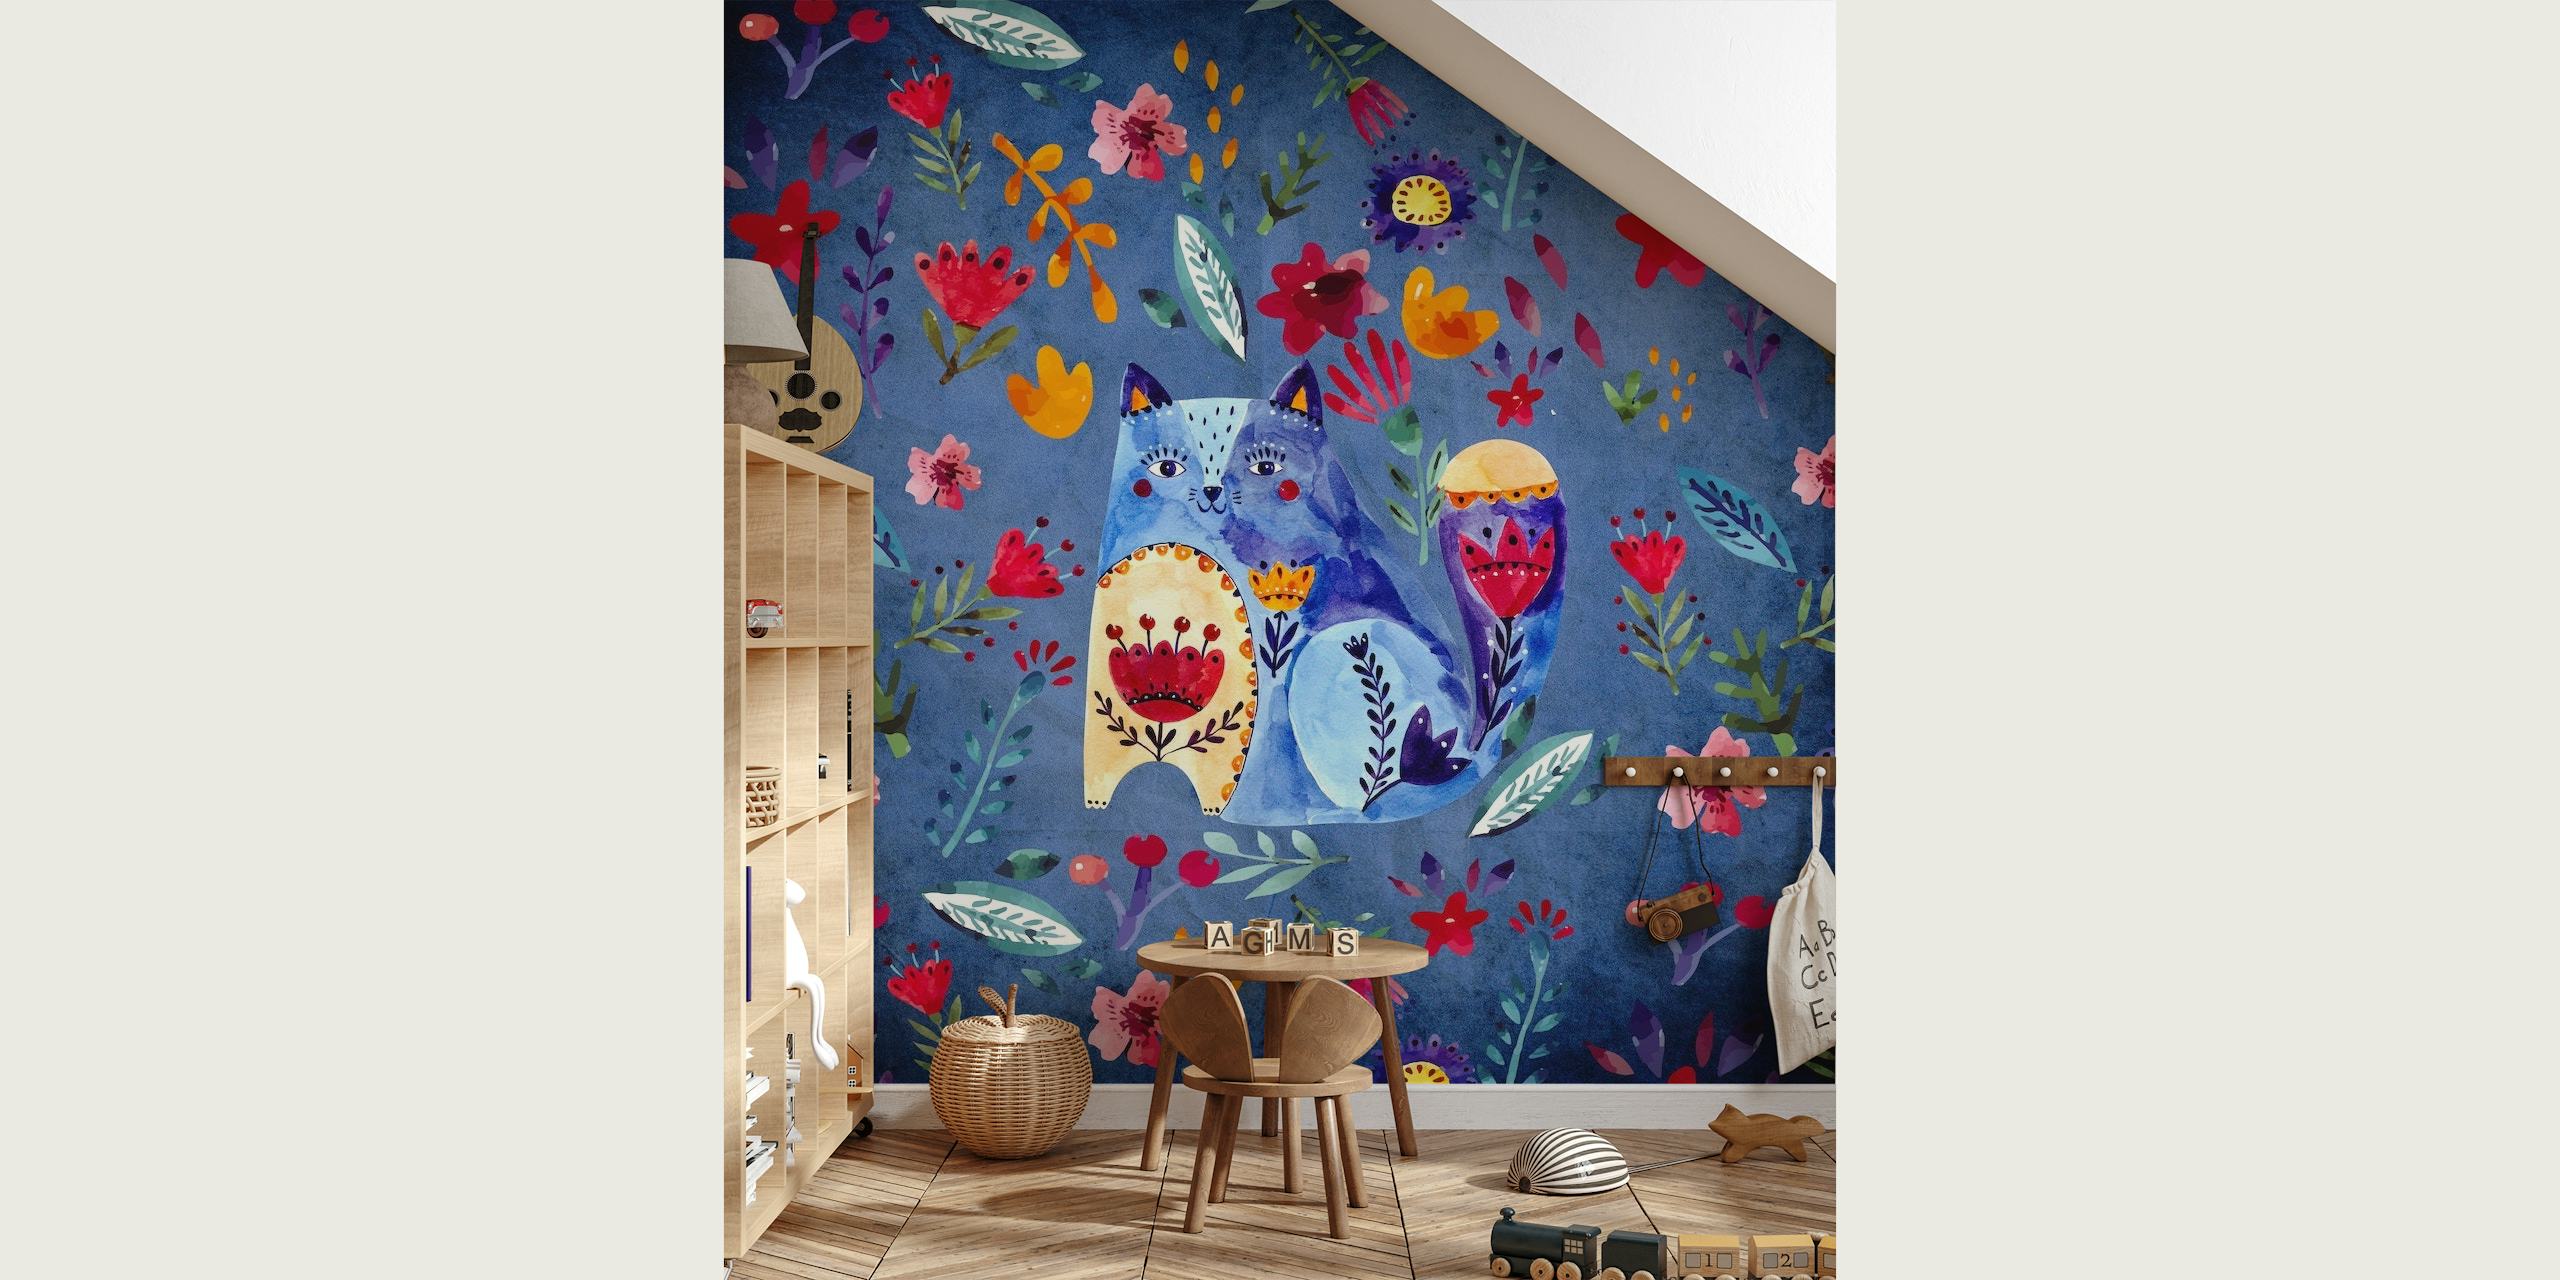 Fototapete „Doodle Cat and Flowers“ mit handgezeichneten Katzen und bunten Blumenmustern auf blauem Hintergrund.